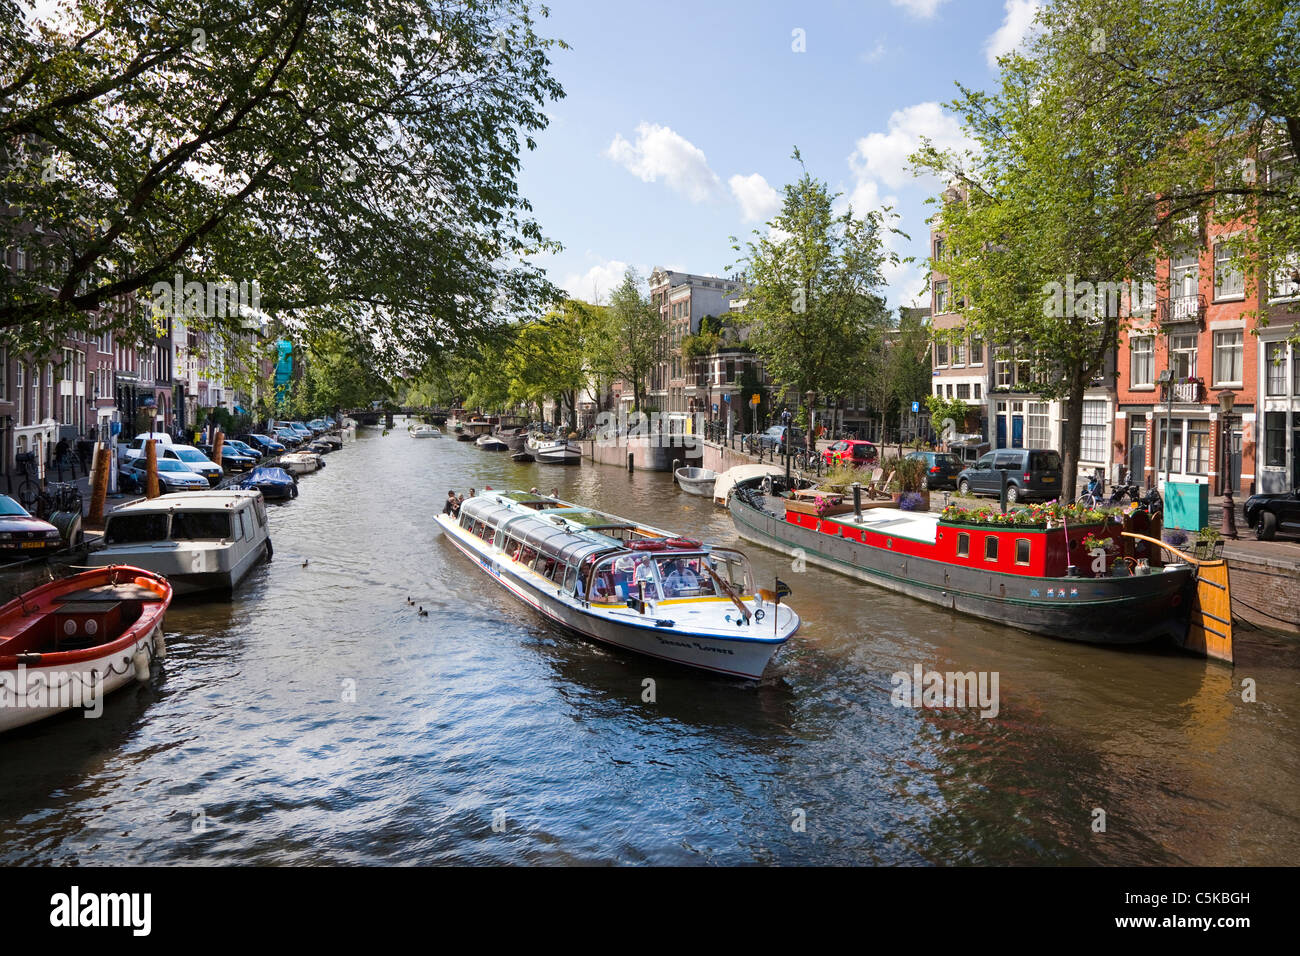 Touristenboot Kanal Segeln an einem Kanal in Amsterdam, Niederlande Stockfoto